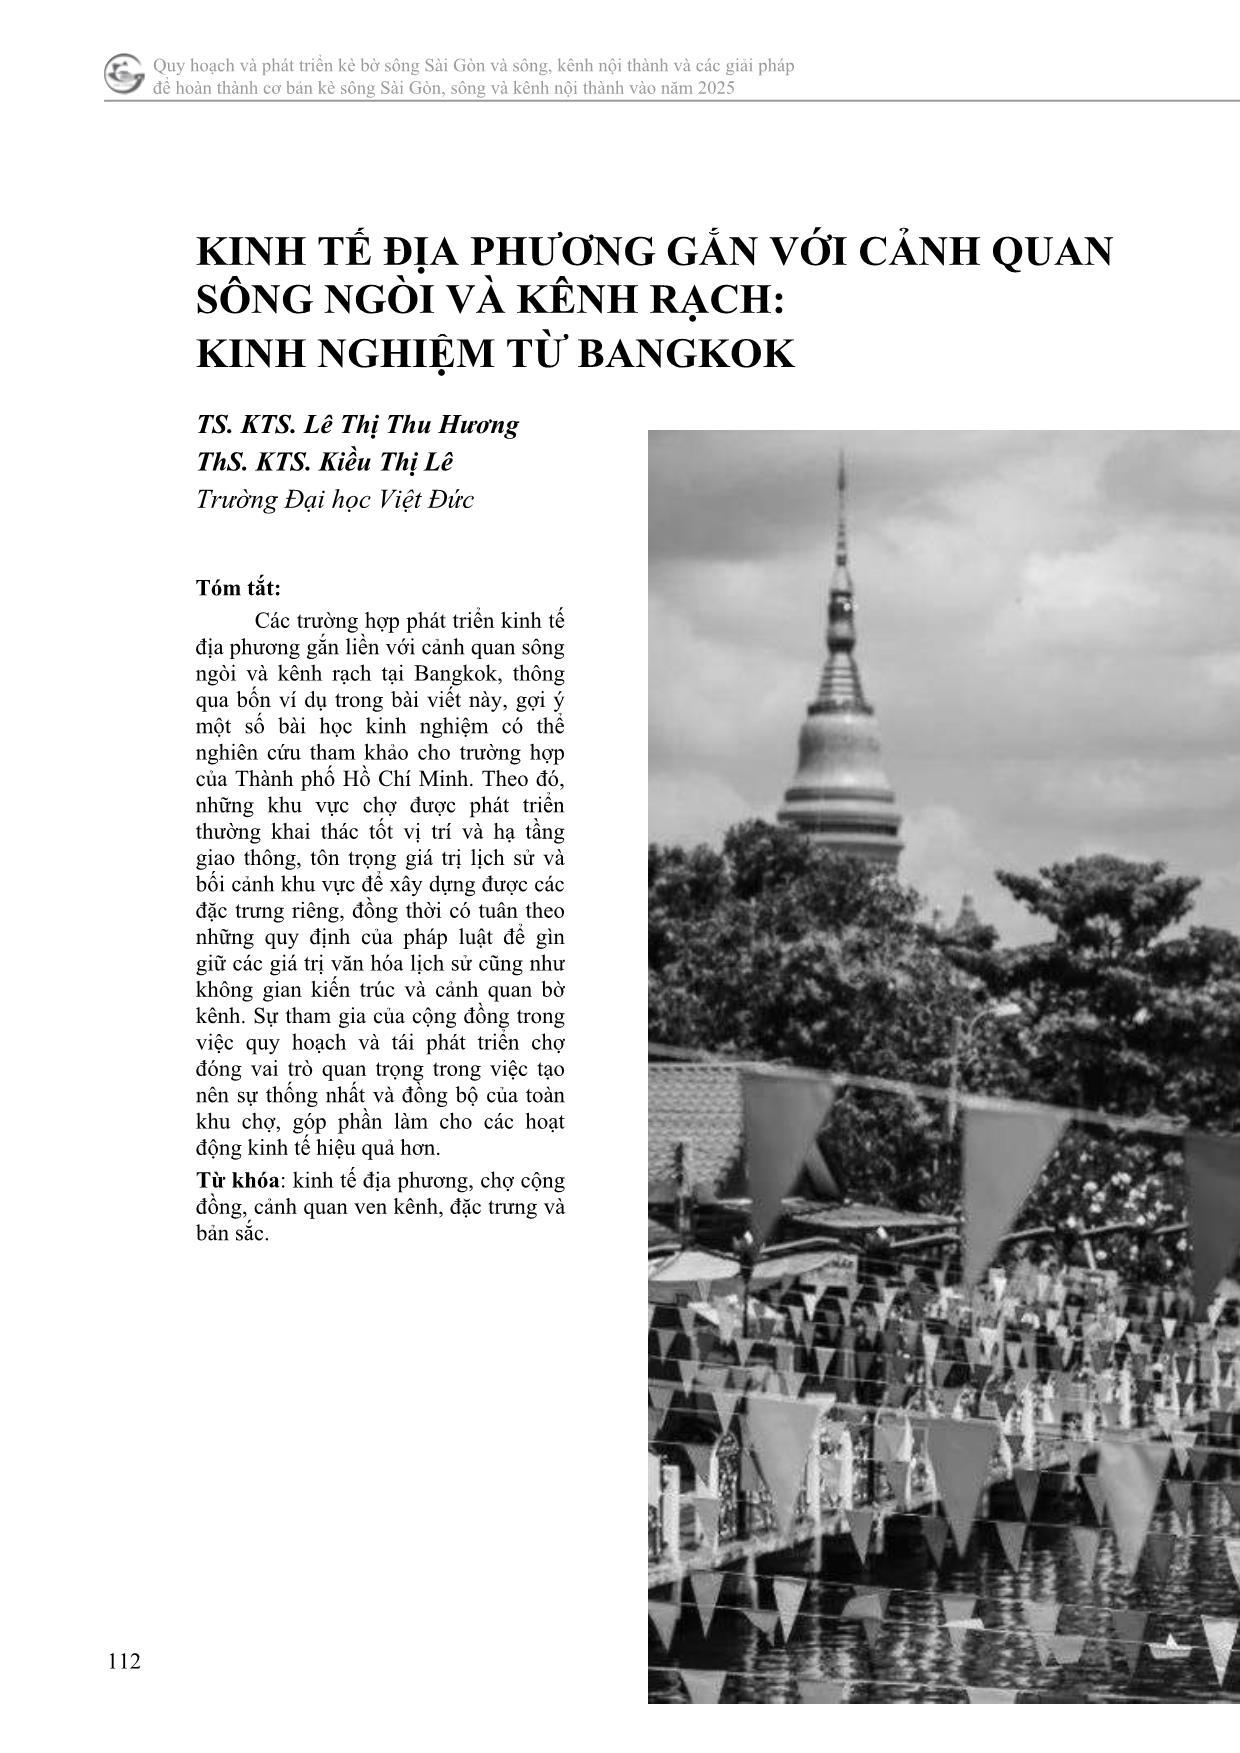 Kinh tế địa phương gắn với cảnh quan sông ngòi và kênh rạch: kinh nghiệm từ Bangkok trang 1